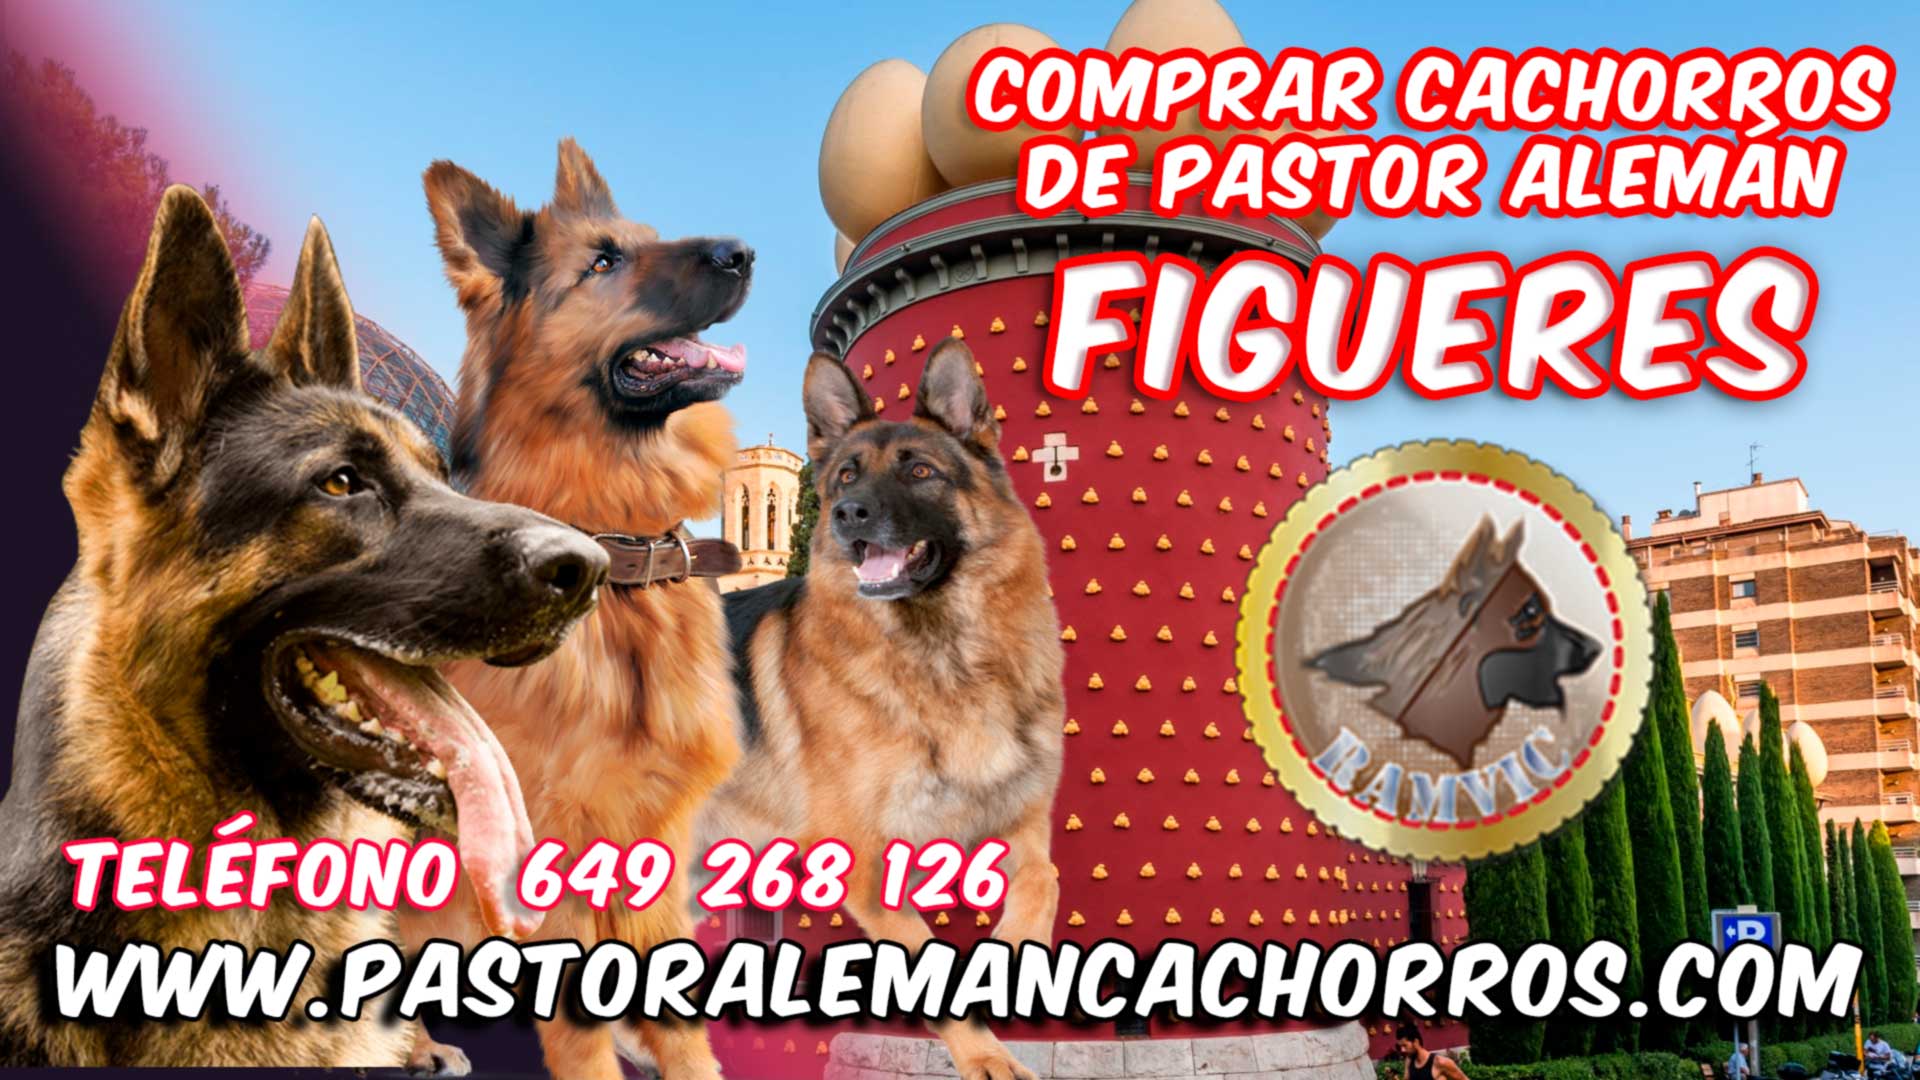 Comprar cachorros de Pastor Alemán en Figueres